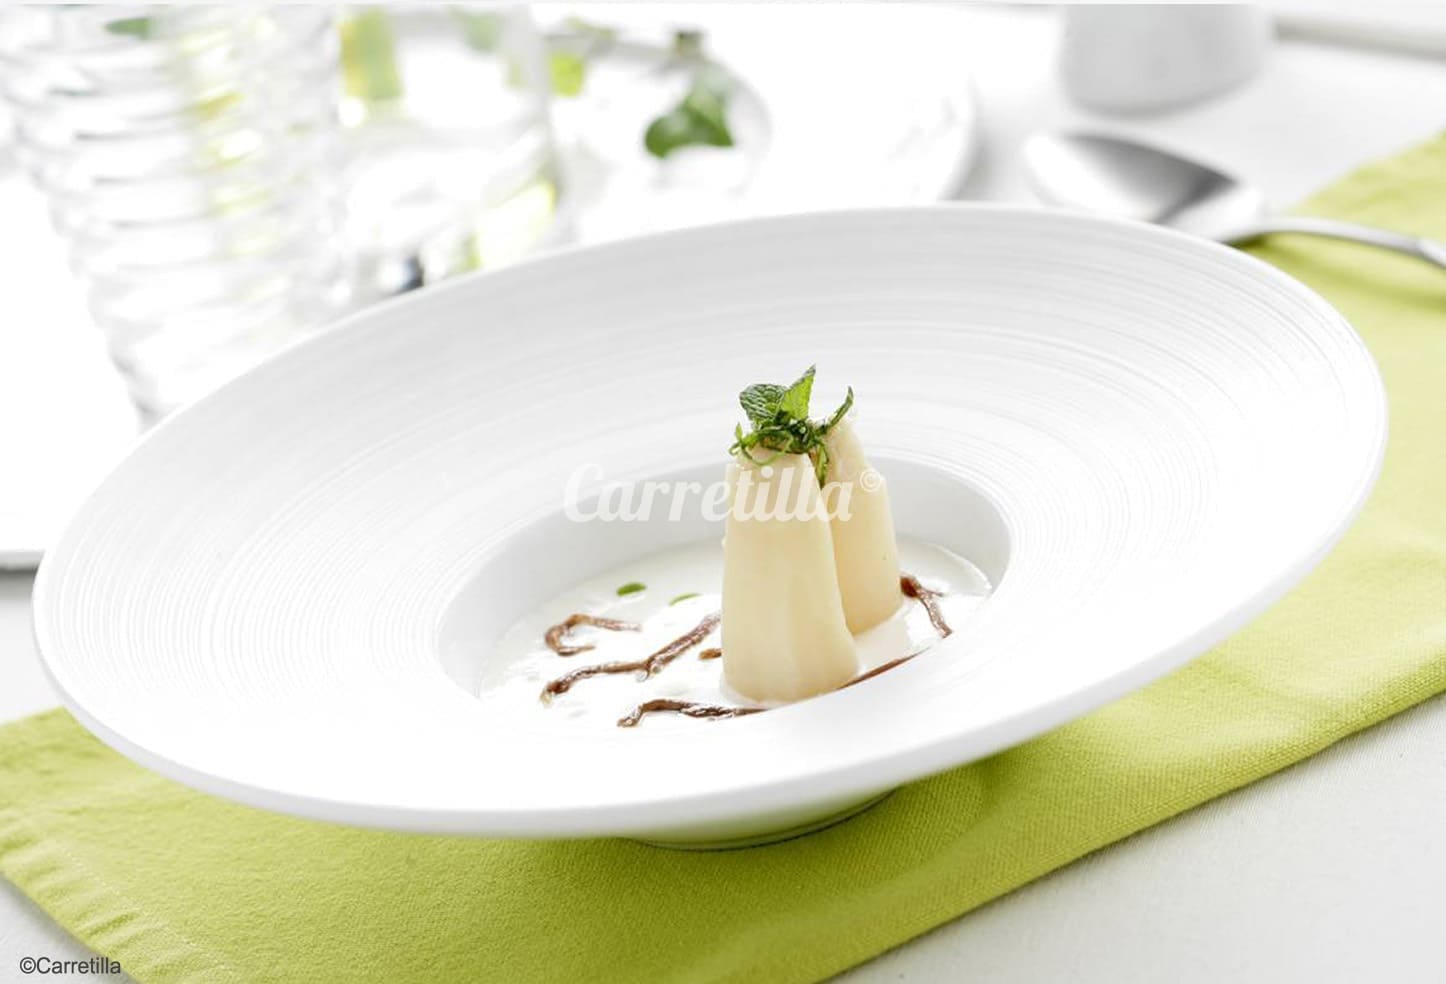 Premium Asparagus Tips